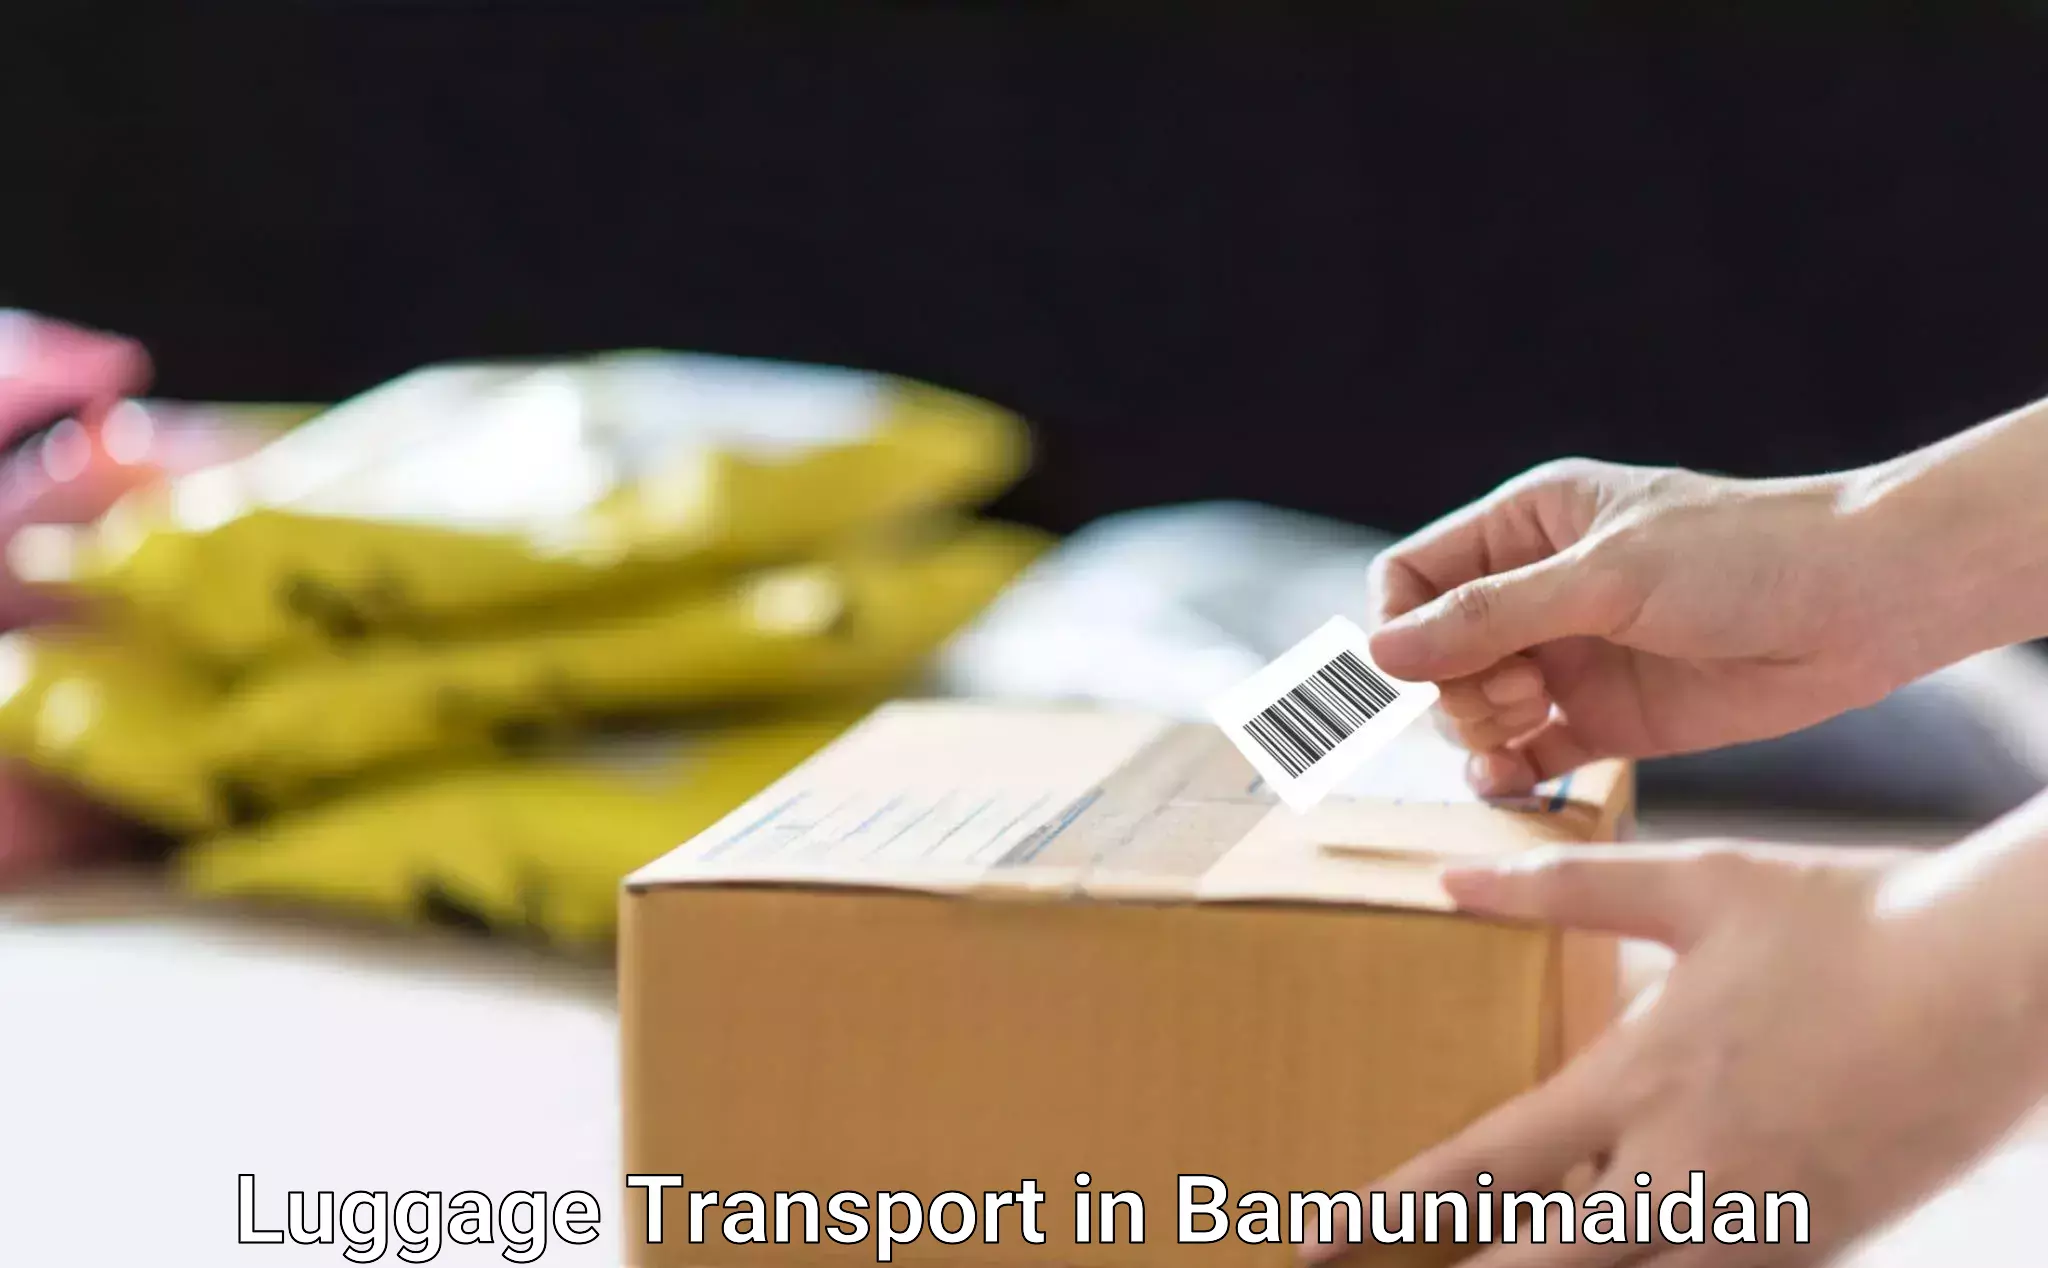 Excess baggage transport in Bamunimaidan